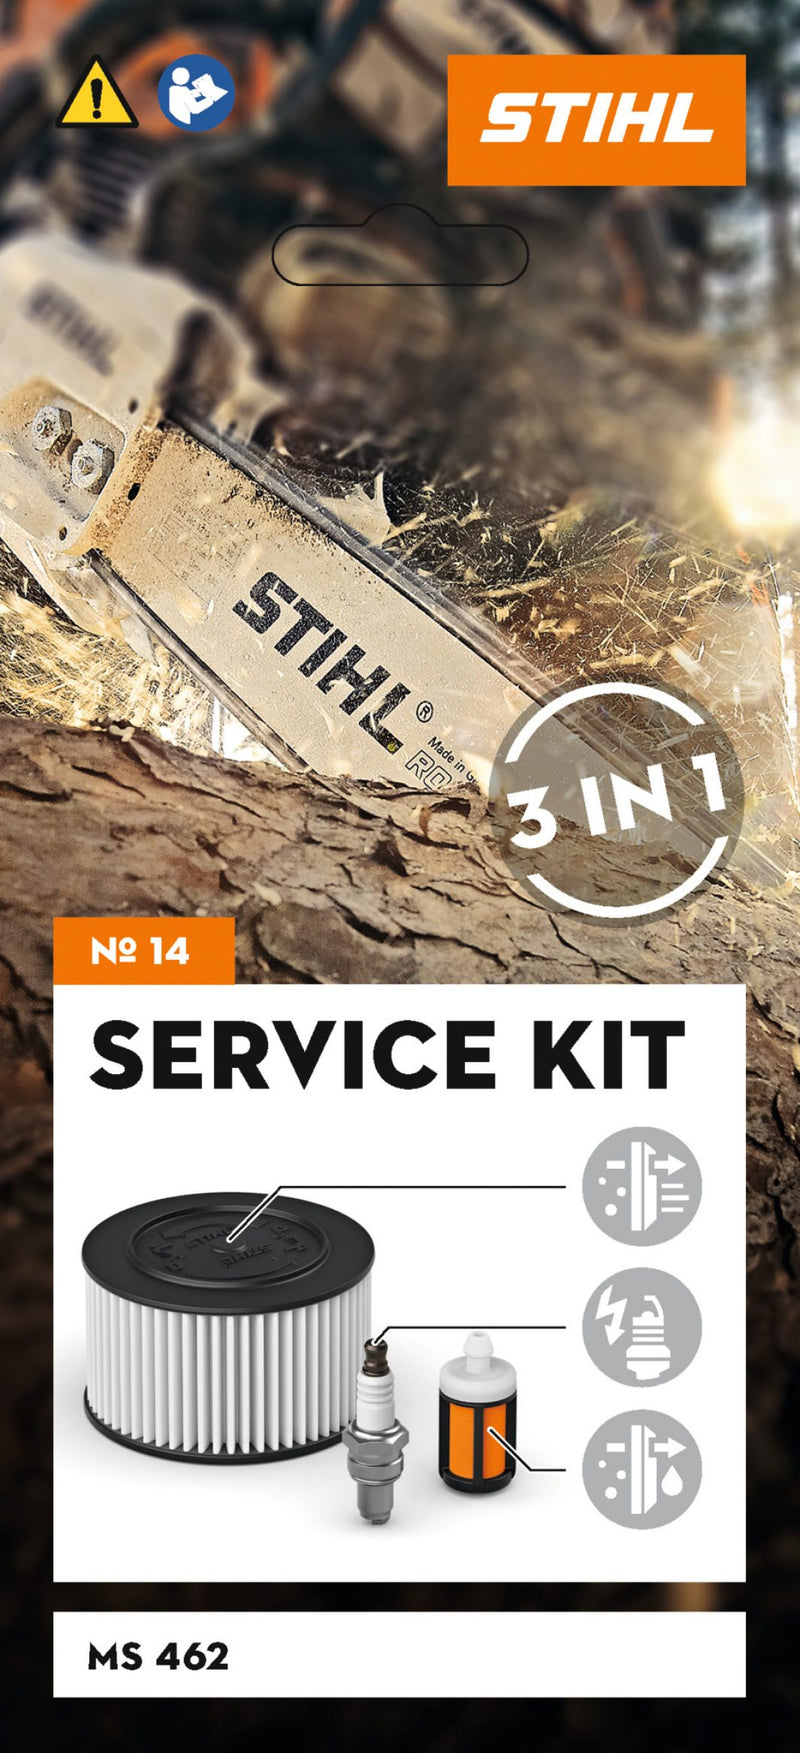 Kit Service d'entretien STIHL - N° 14 - Pour tronçonneuse MS 462